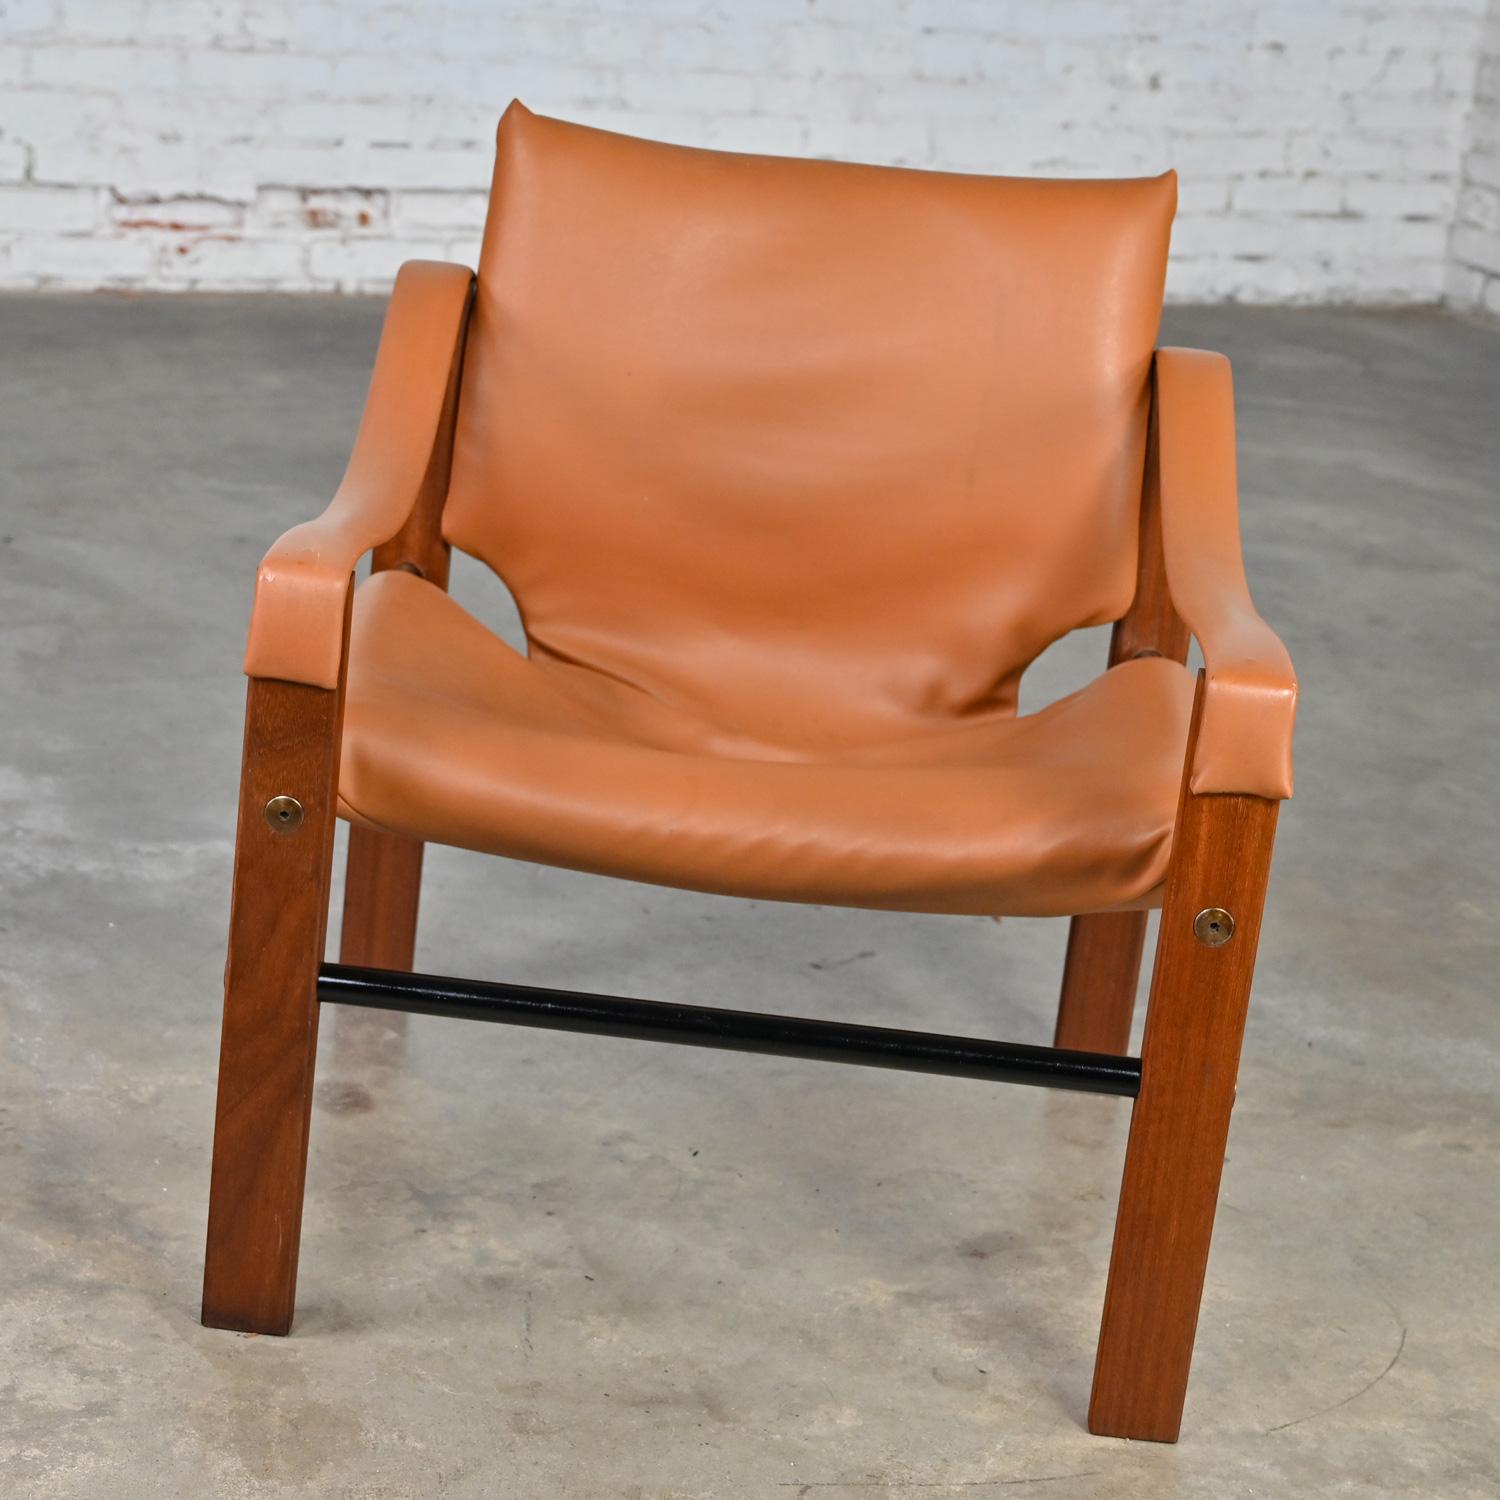 Fantastischer Vintage Chelsea Safari Chair, entworfen von Maurice Burke für Arkana Furniture, in seinem originalen cognacfarbenen Kunstleder oder Vinyl mit einem Rahmen aus Teakholz, schwarzen Metallrohrkufen und Stahlschraubendetails.  Schöner